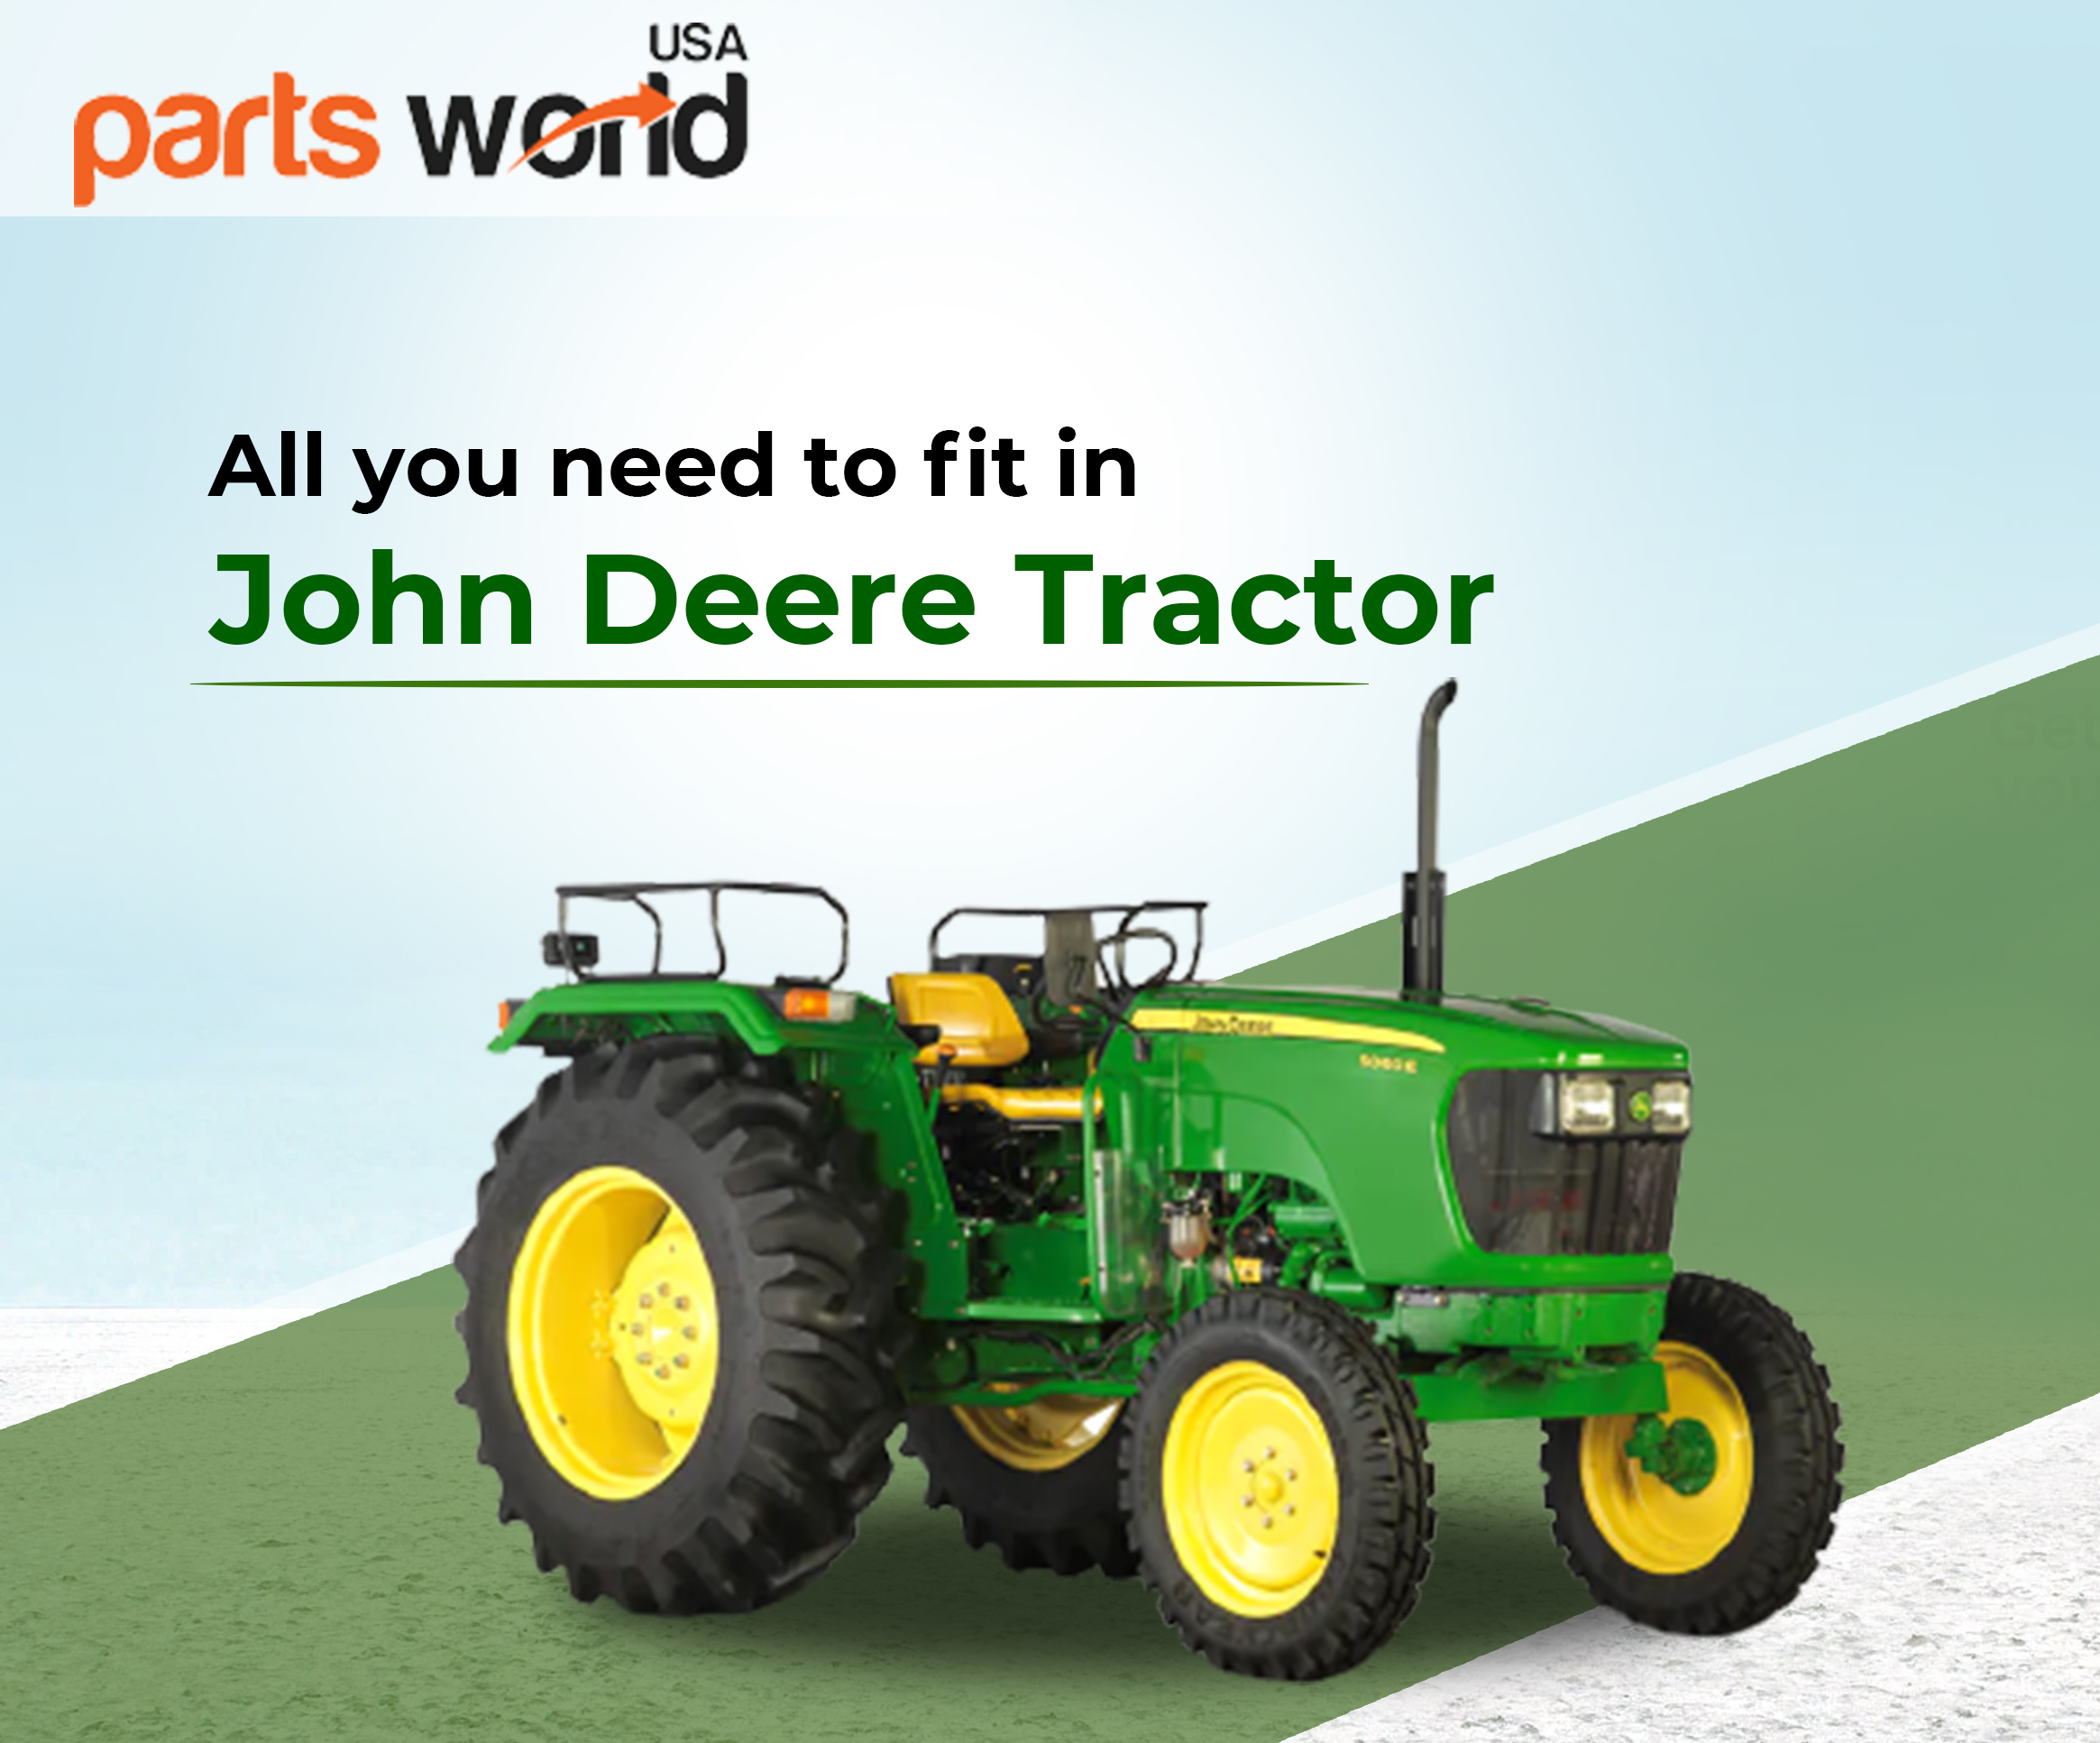 John Deere Tractors: Versatile and Reliable